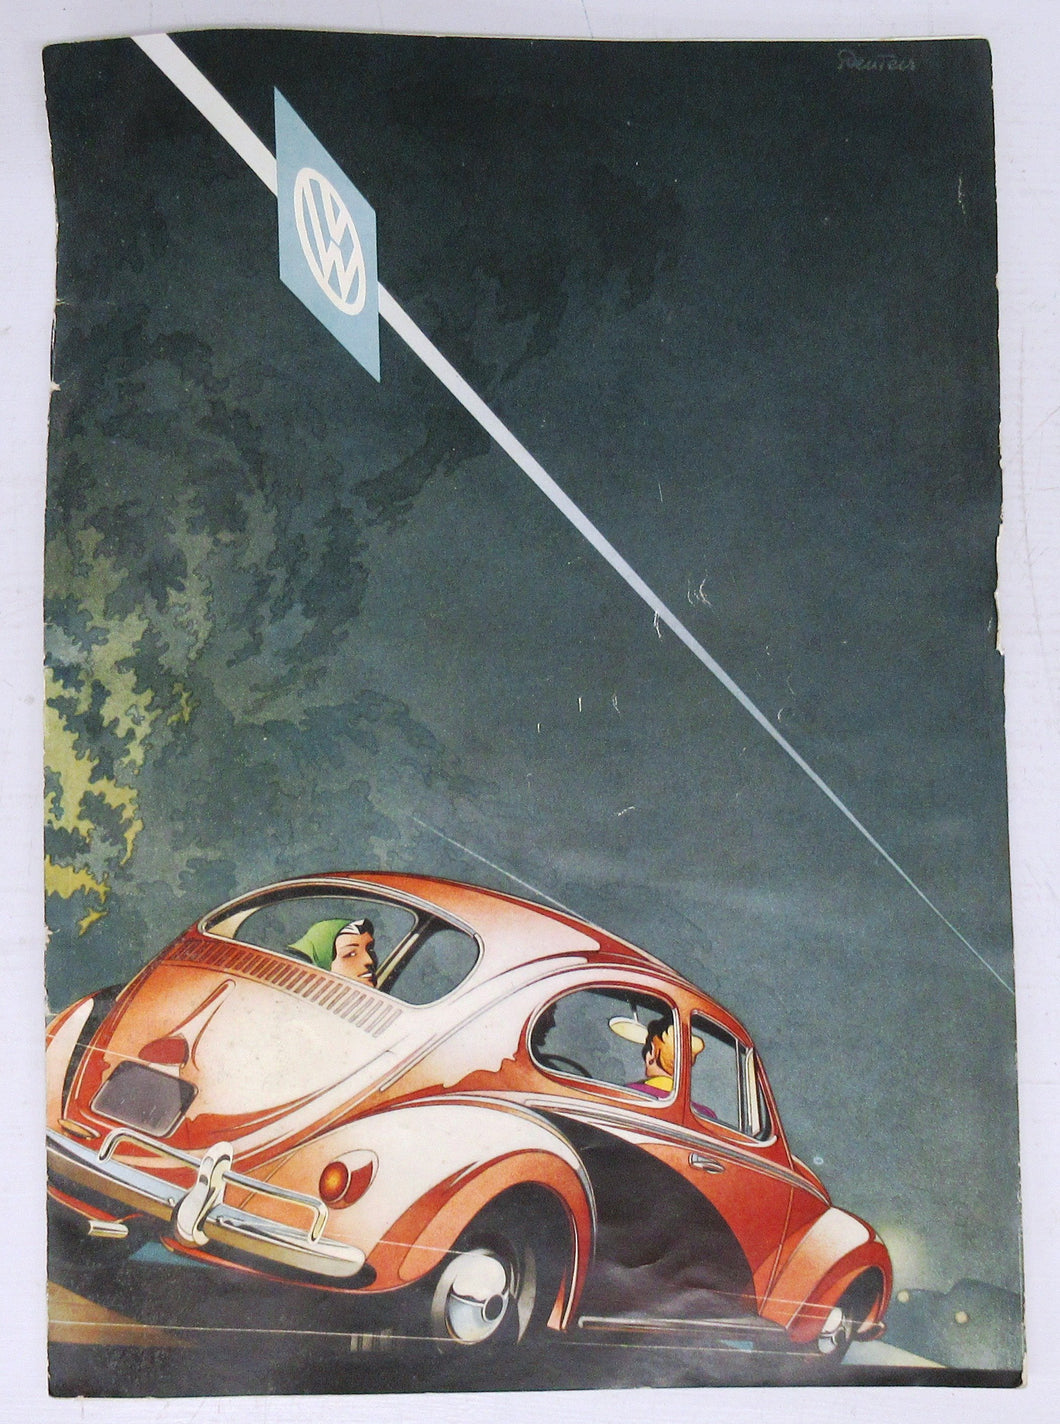 1958 Volkswagen brochure